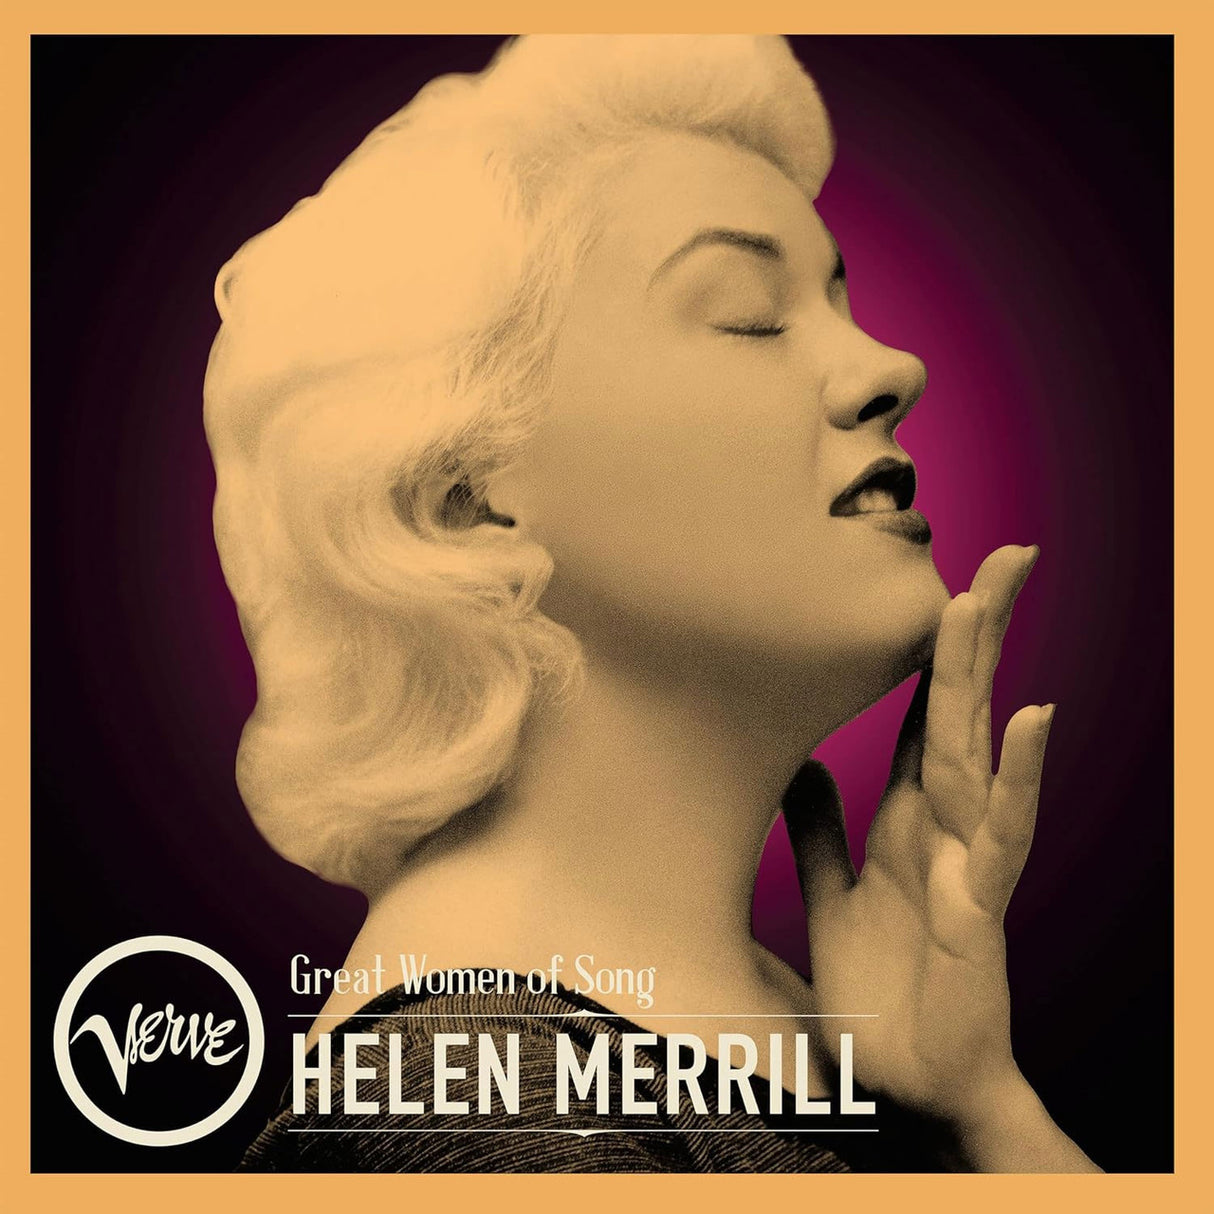 Merrill, Helen - Great Women Of Song